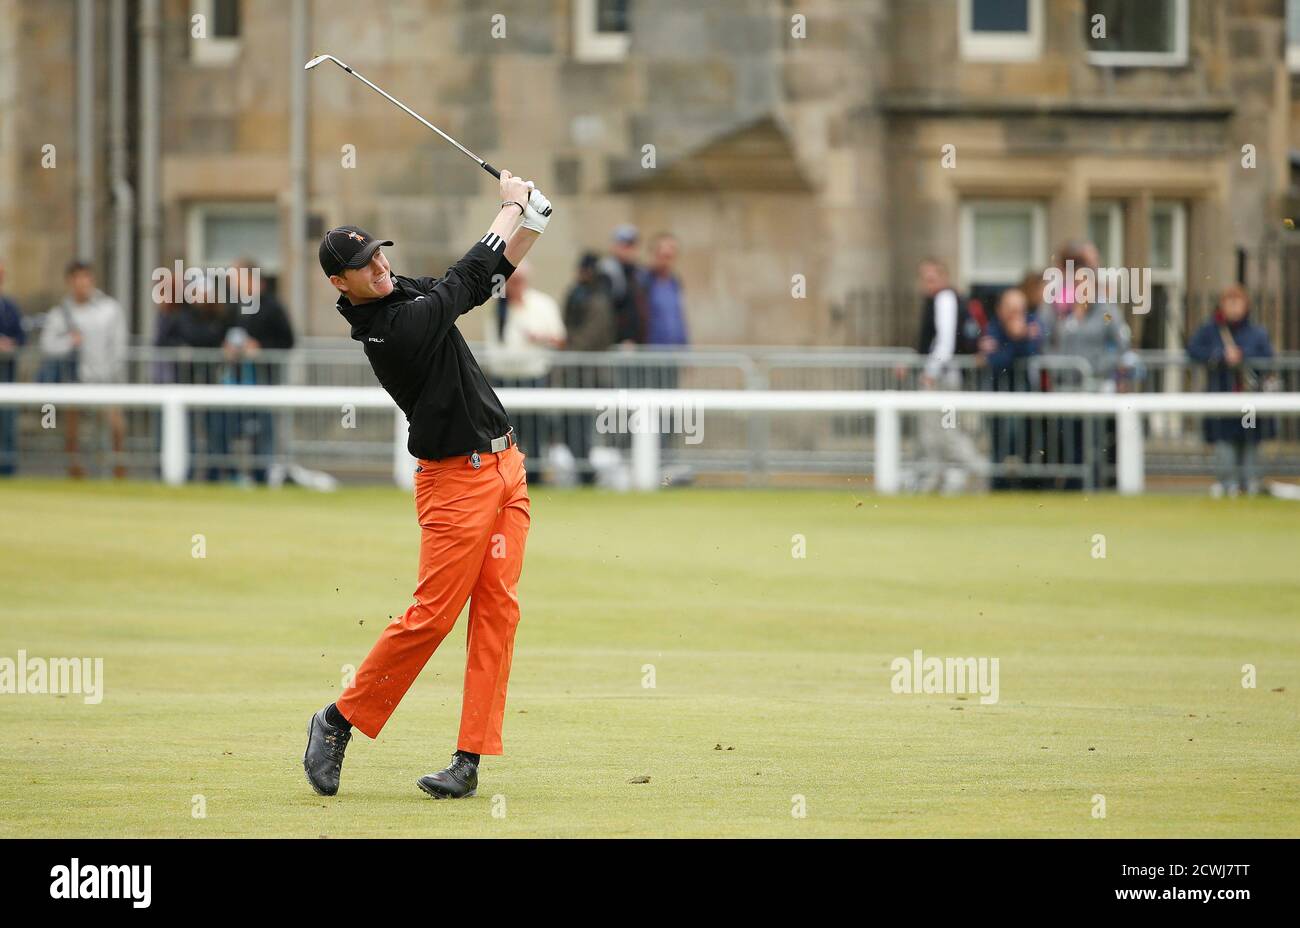 Jordan Niebrugge de los EE.UU. Juega su segundo tiro en el primer hoyo durante la ronda final del campeonato de golf British Open en el Old Course en St. Andrews, Escocia, 20 de julio de 2015. REUTERS/Phil Noble Foto de stock